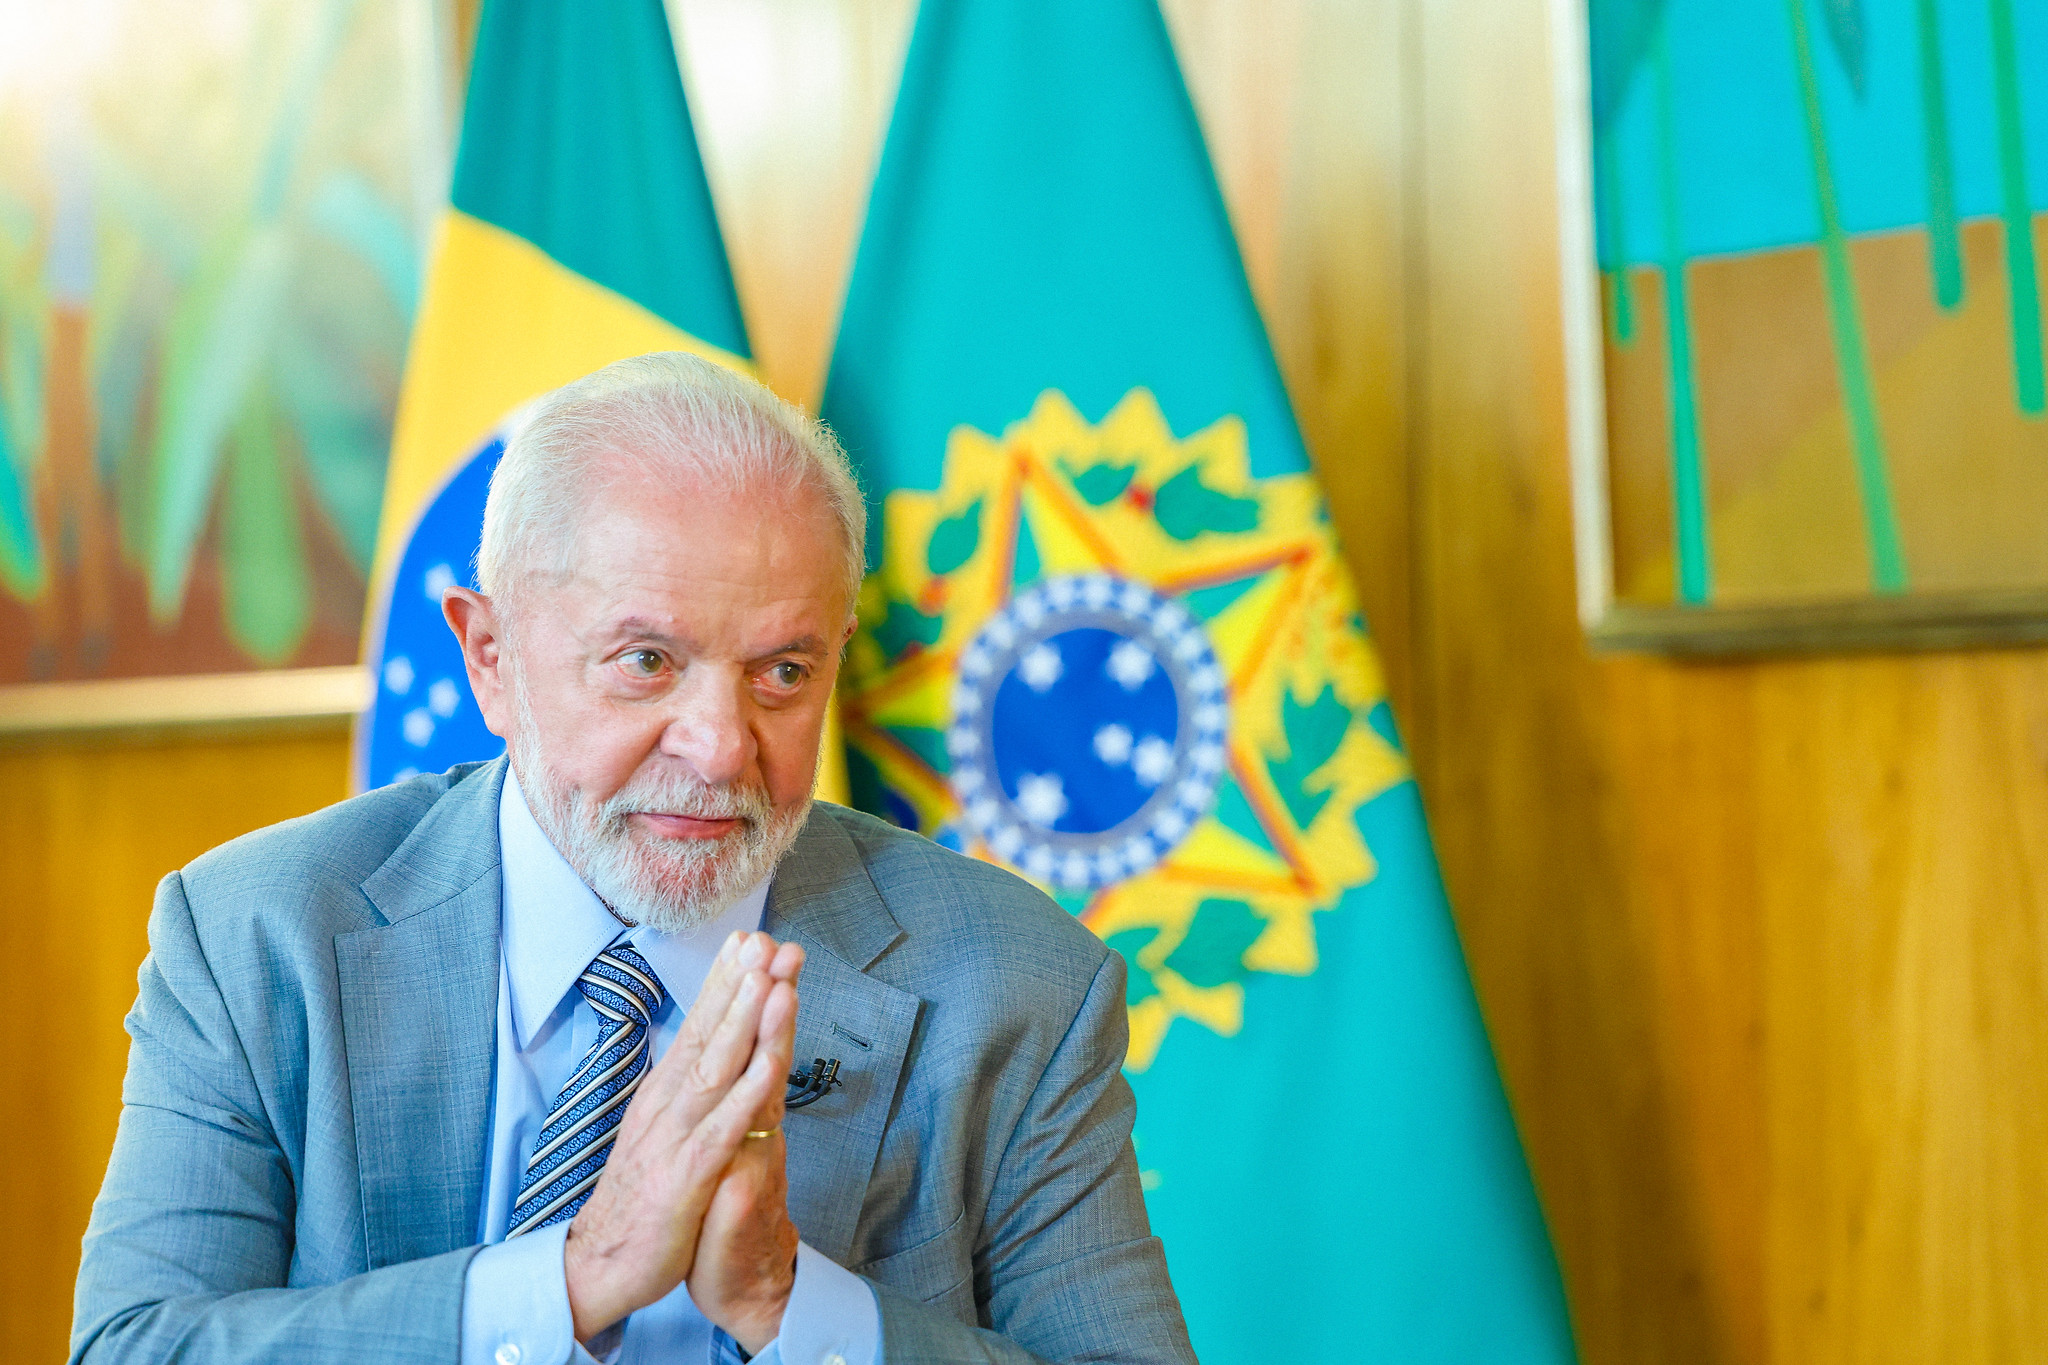 Reprovação de Lula vai a 33% e empata com aprovação, agora de 35%, mostra Datafolha